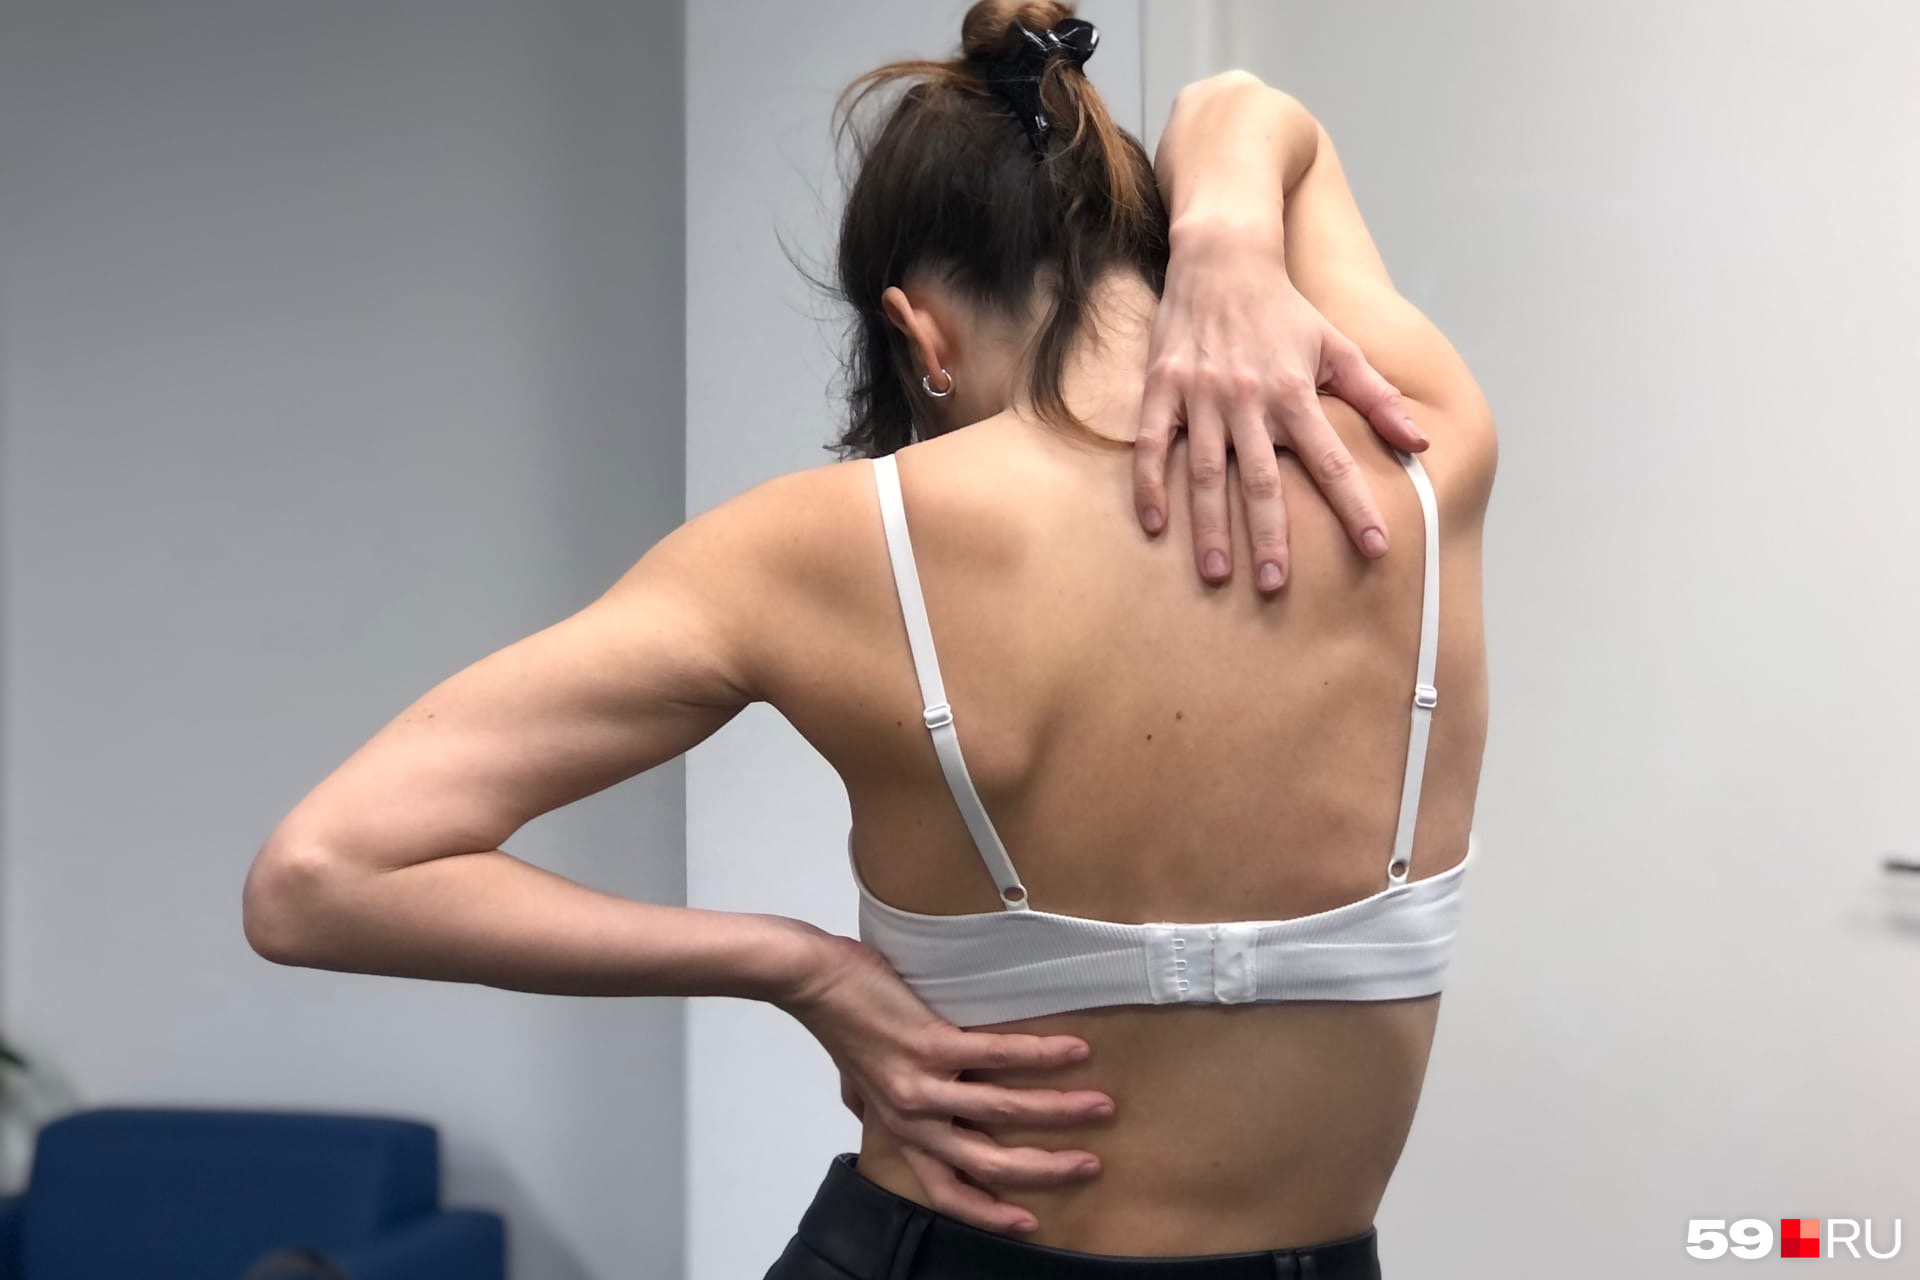 Связь болей в спине и заболеваний легких: миф или реальность?